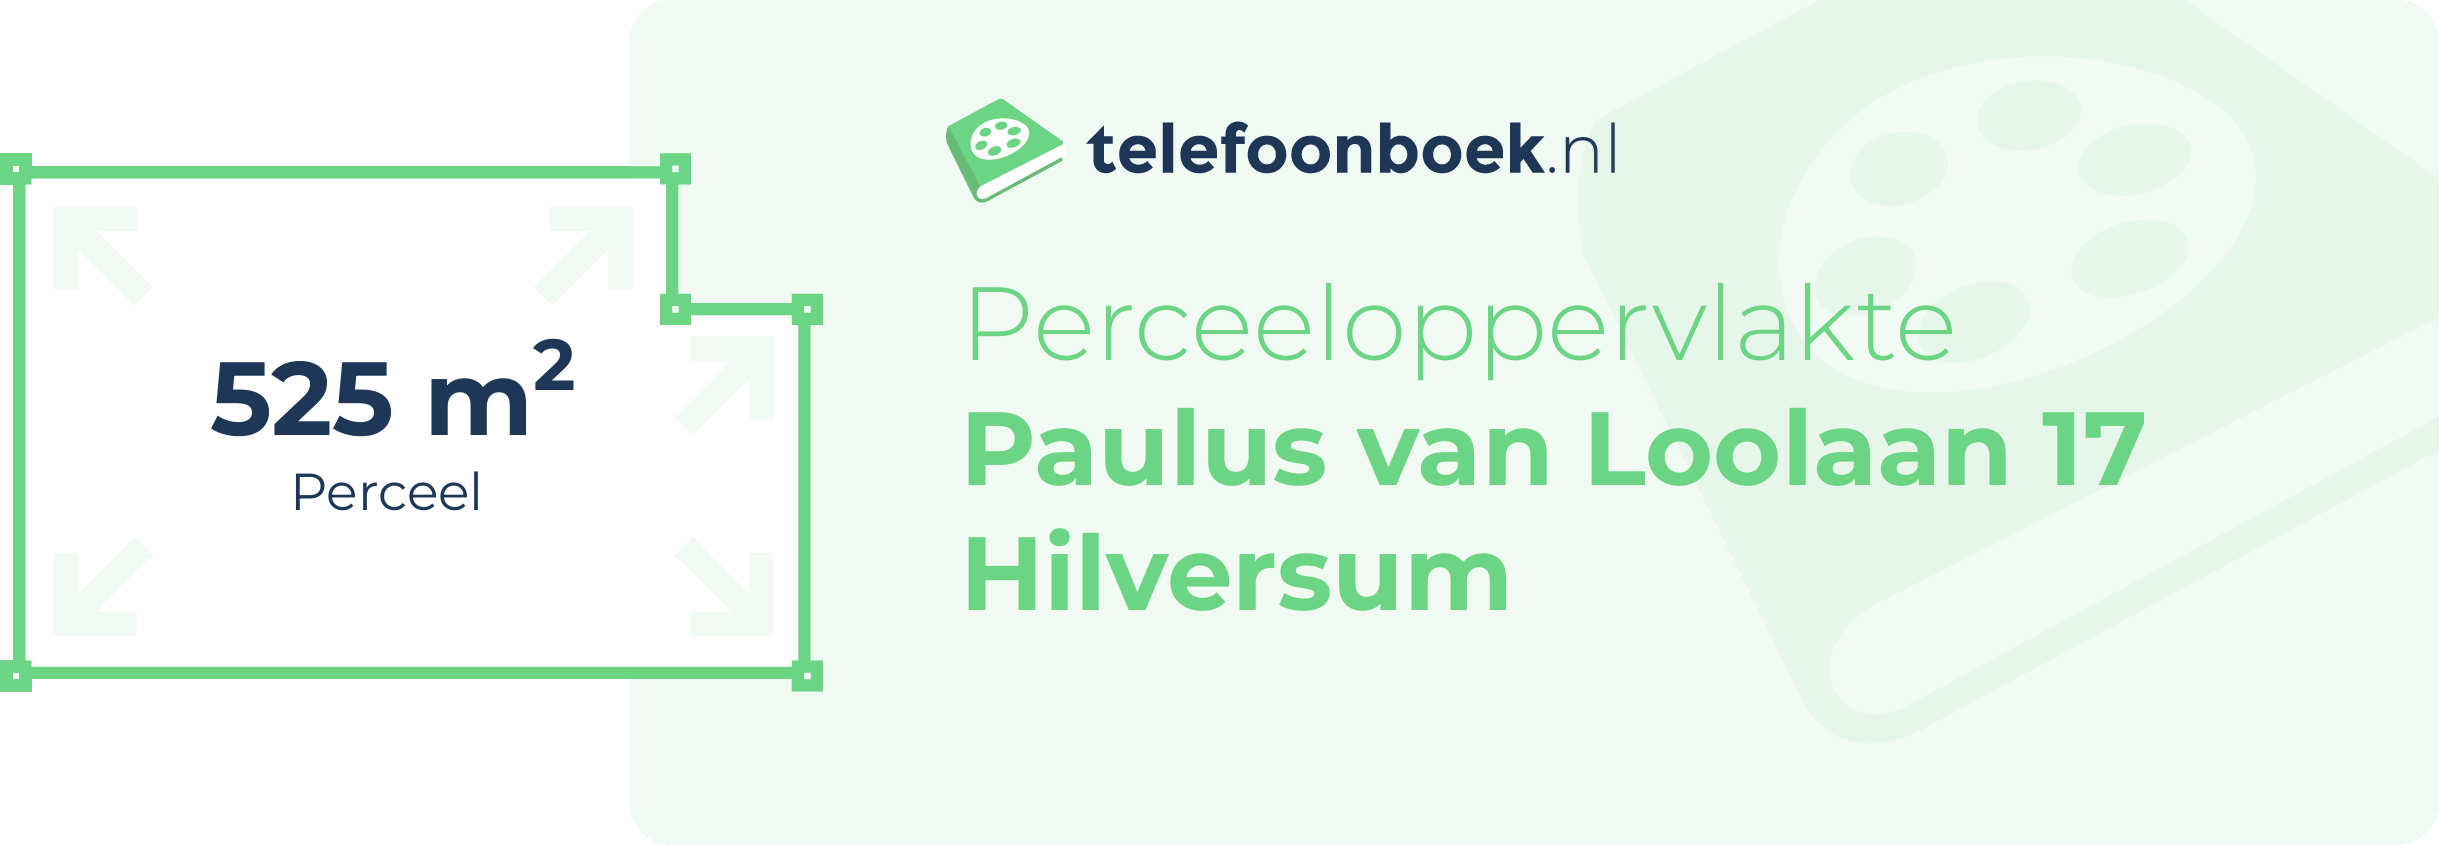 Perceeloppervlakte Paulus Van Loolaan 17 Hilversum